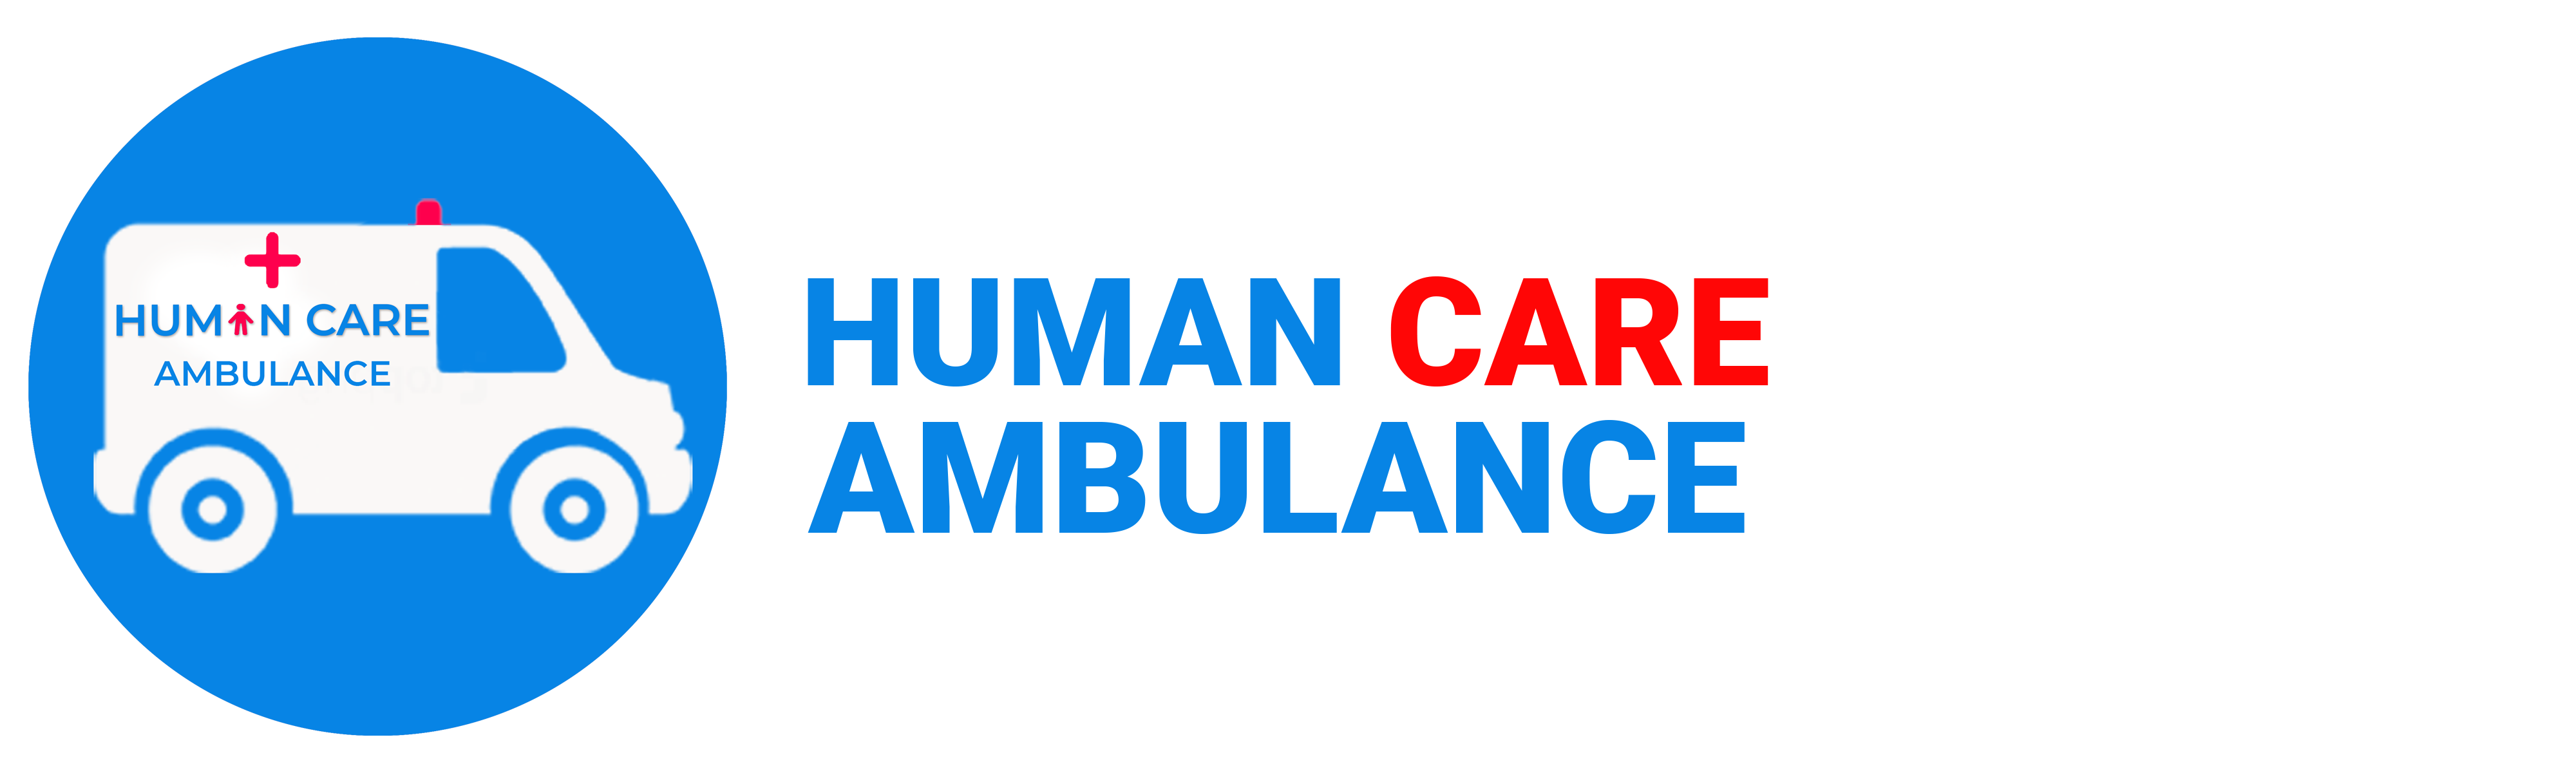 HumancareAmbulance